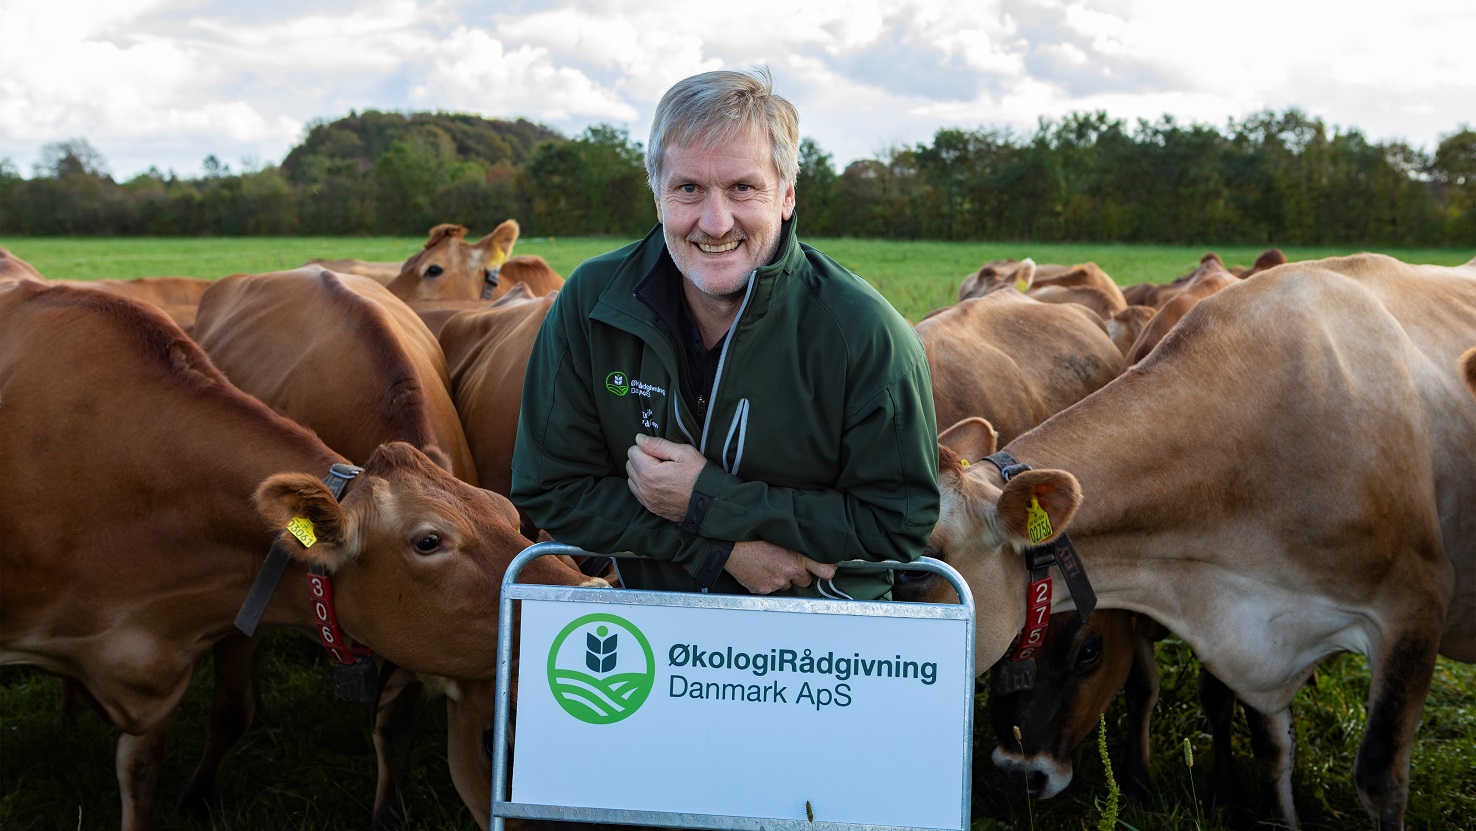 Erik Andersen står med et skilt, hvorpå der står ØkologiRådgivning Danmark ApS - bag ham står en flok køer